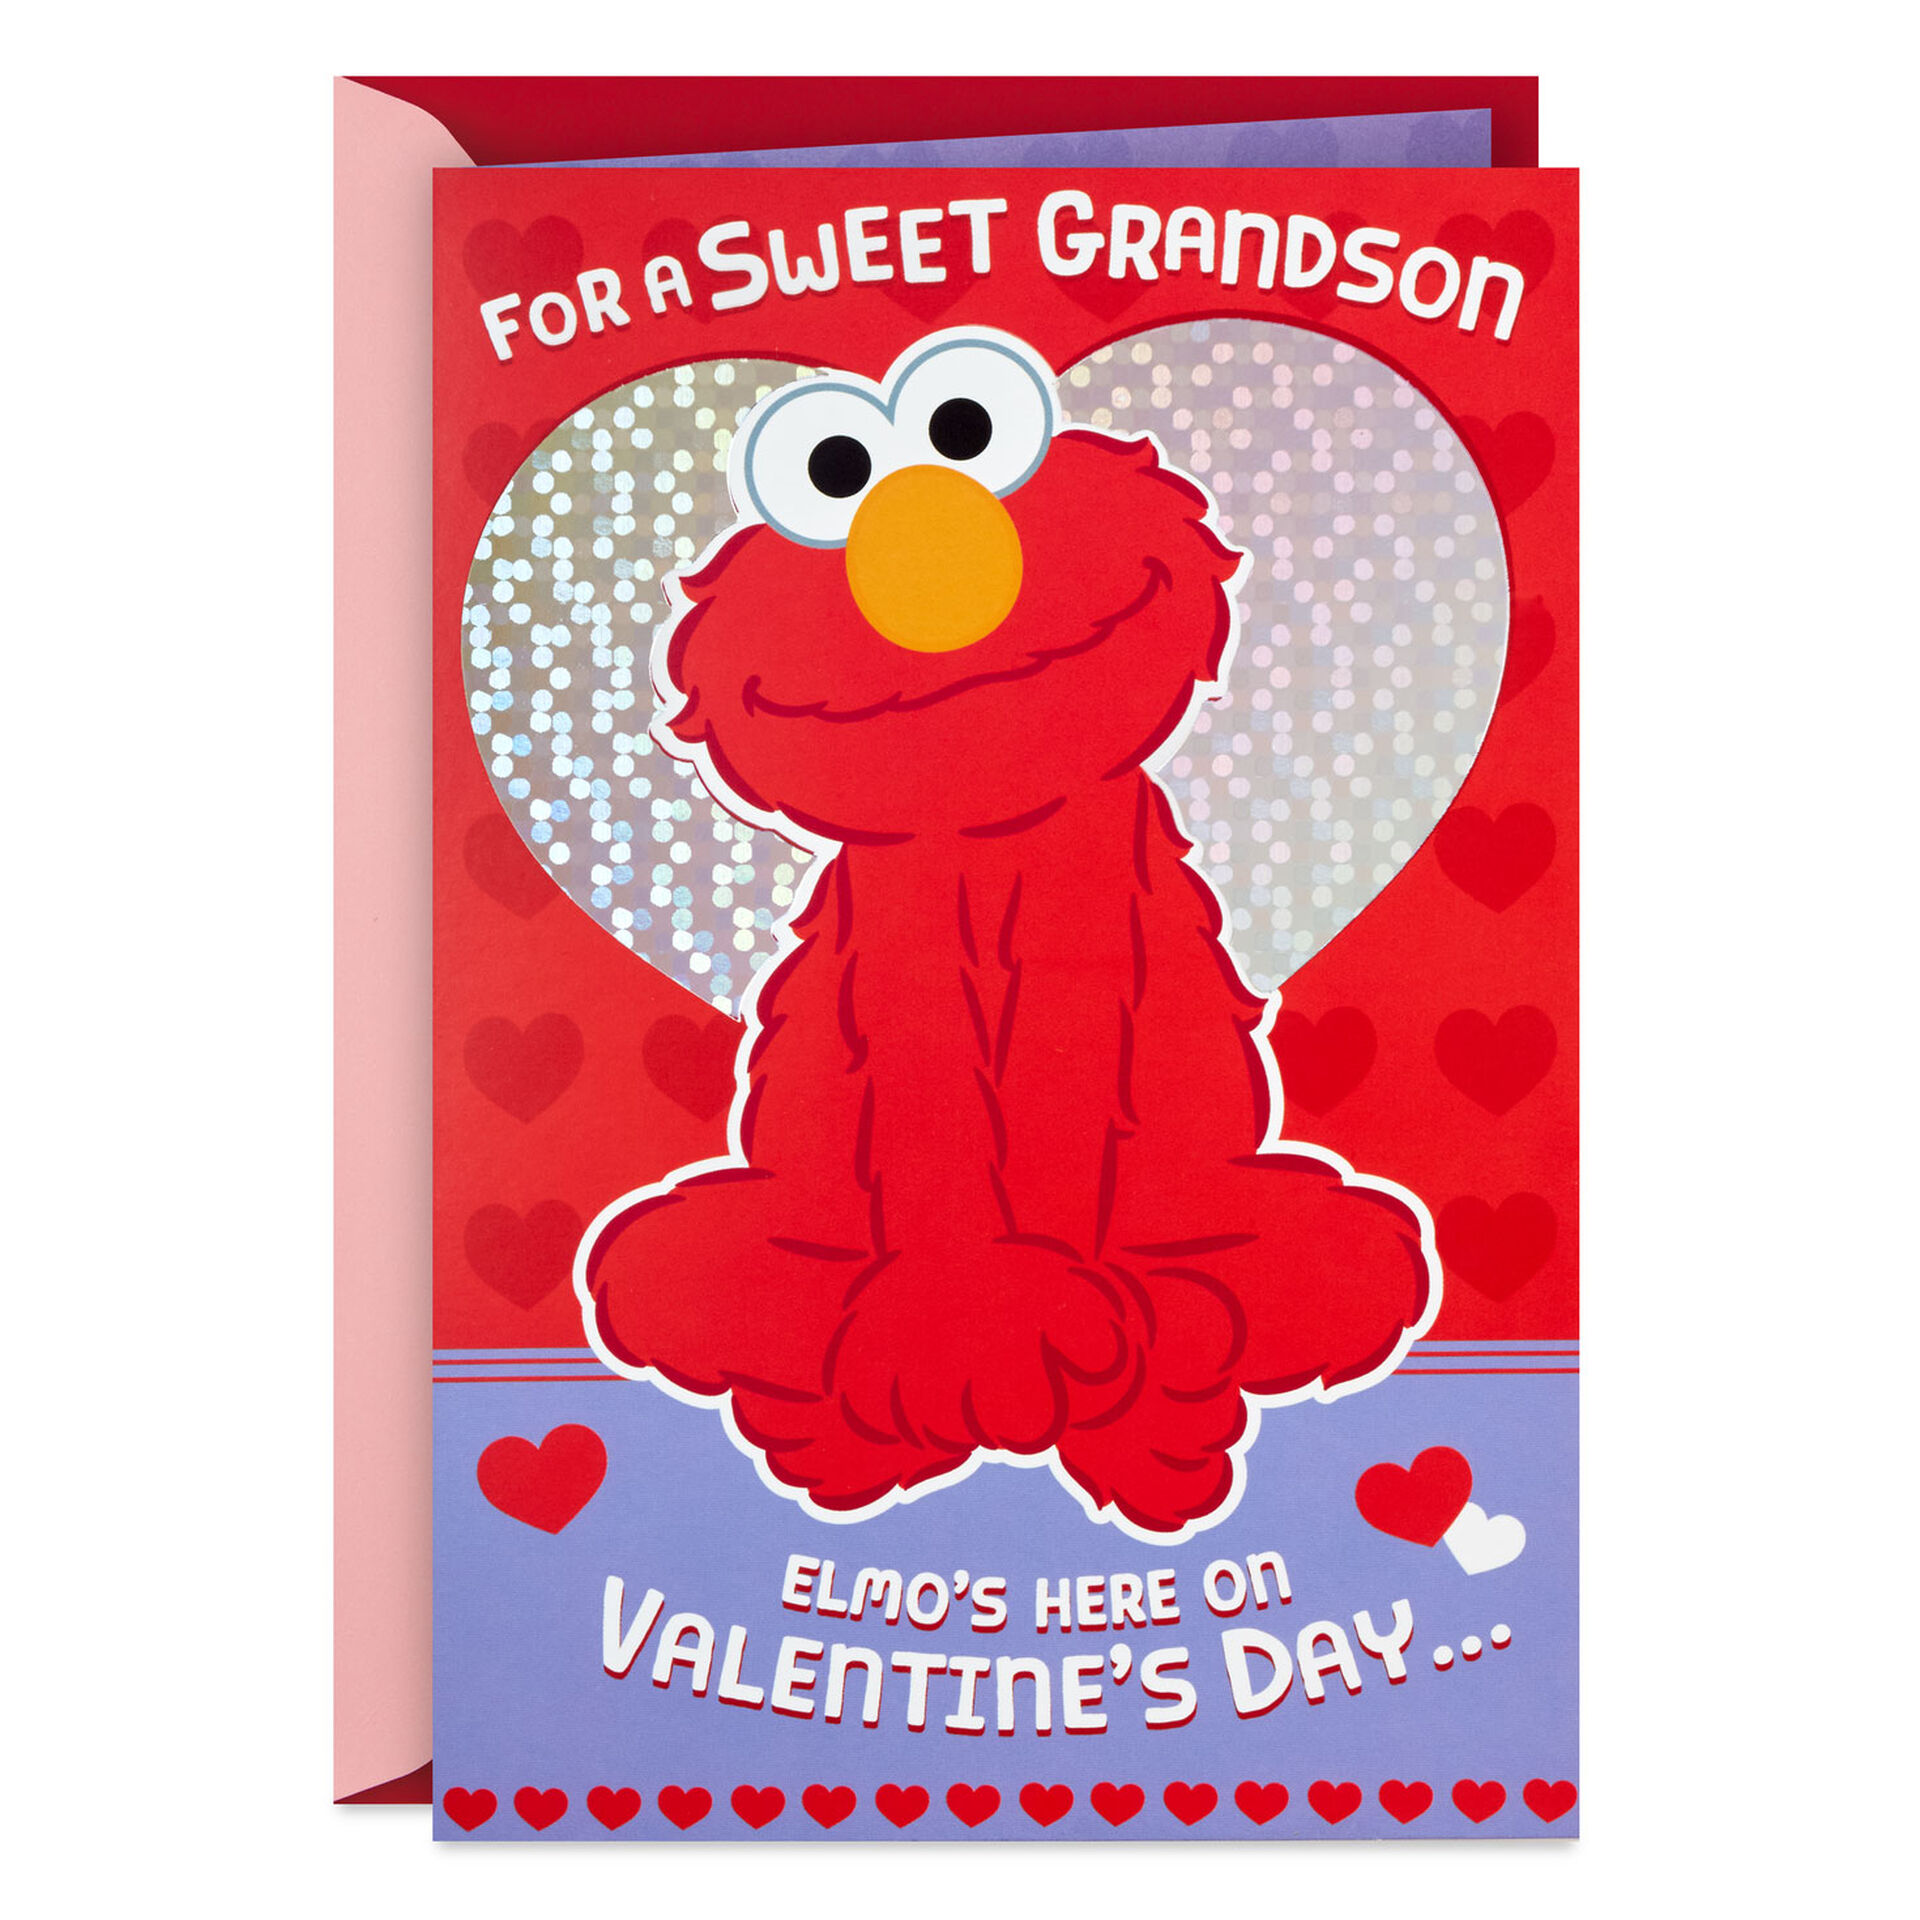 Sesame-Street-Elmo-Hug-Valentines-Day-Card-for-Grandson_299VKD2163_01